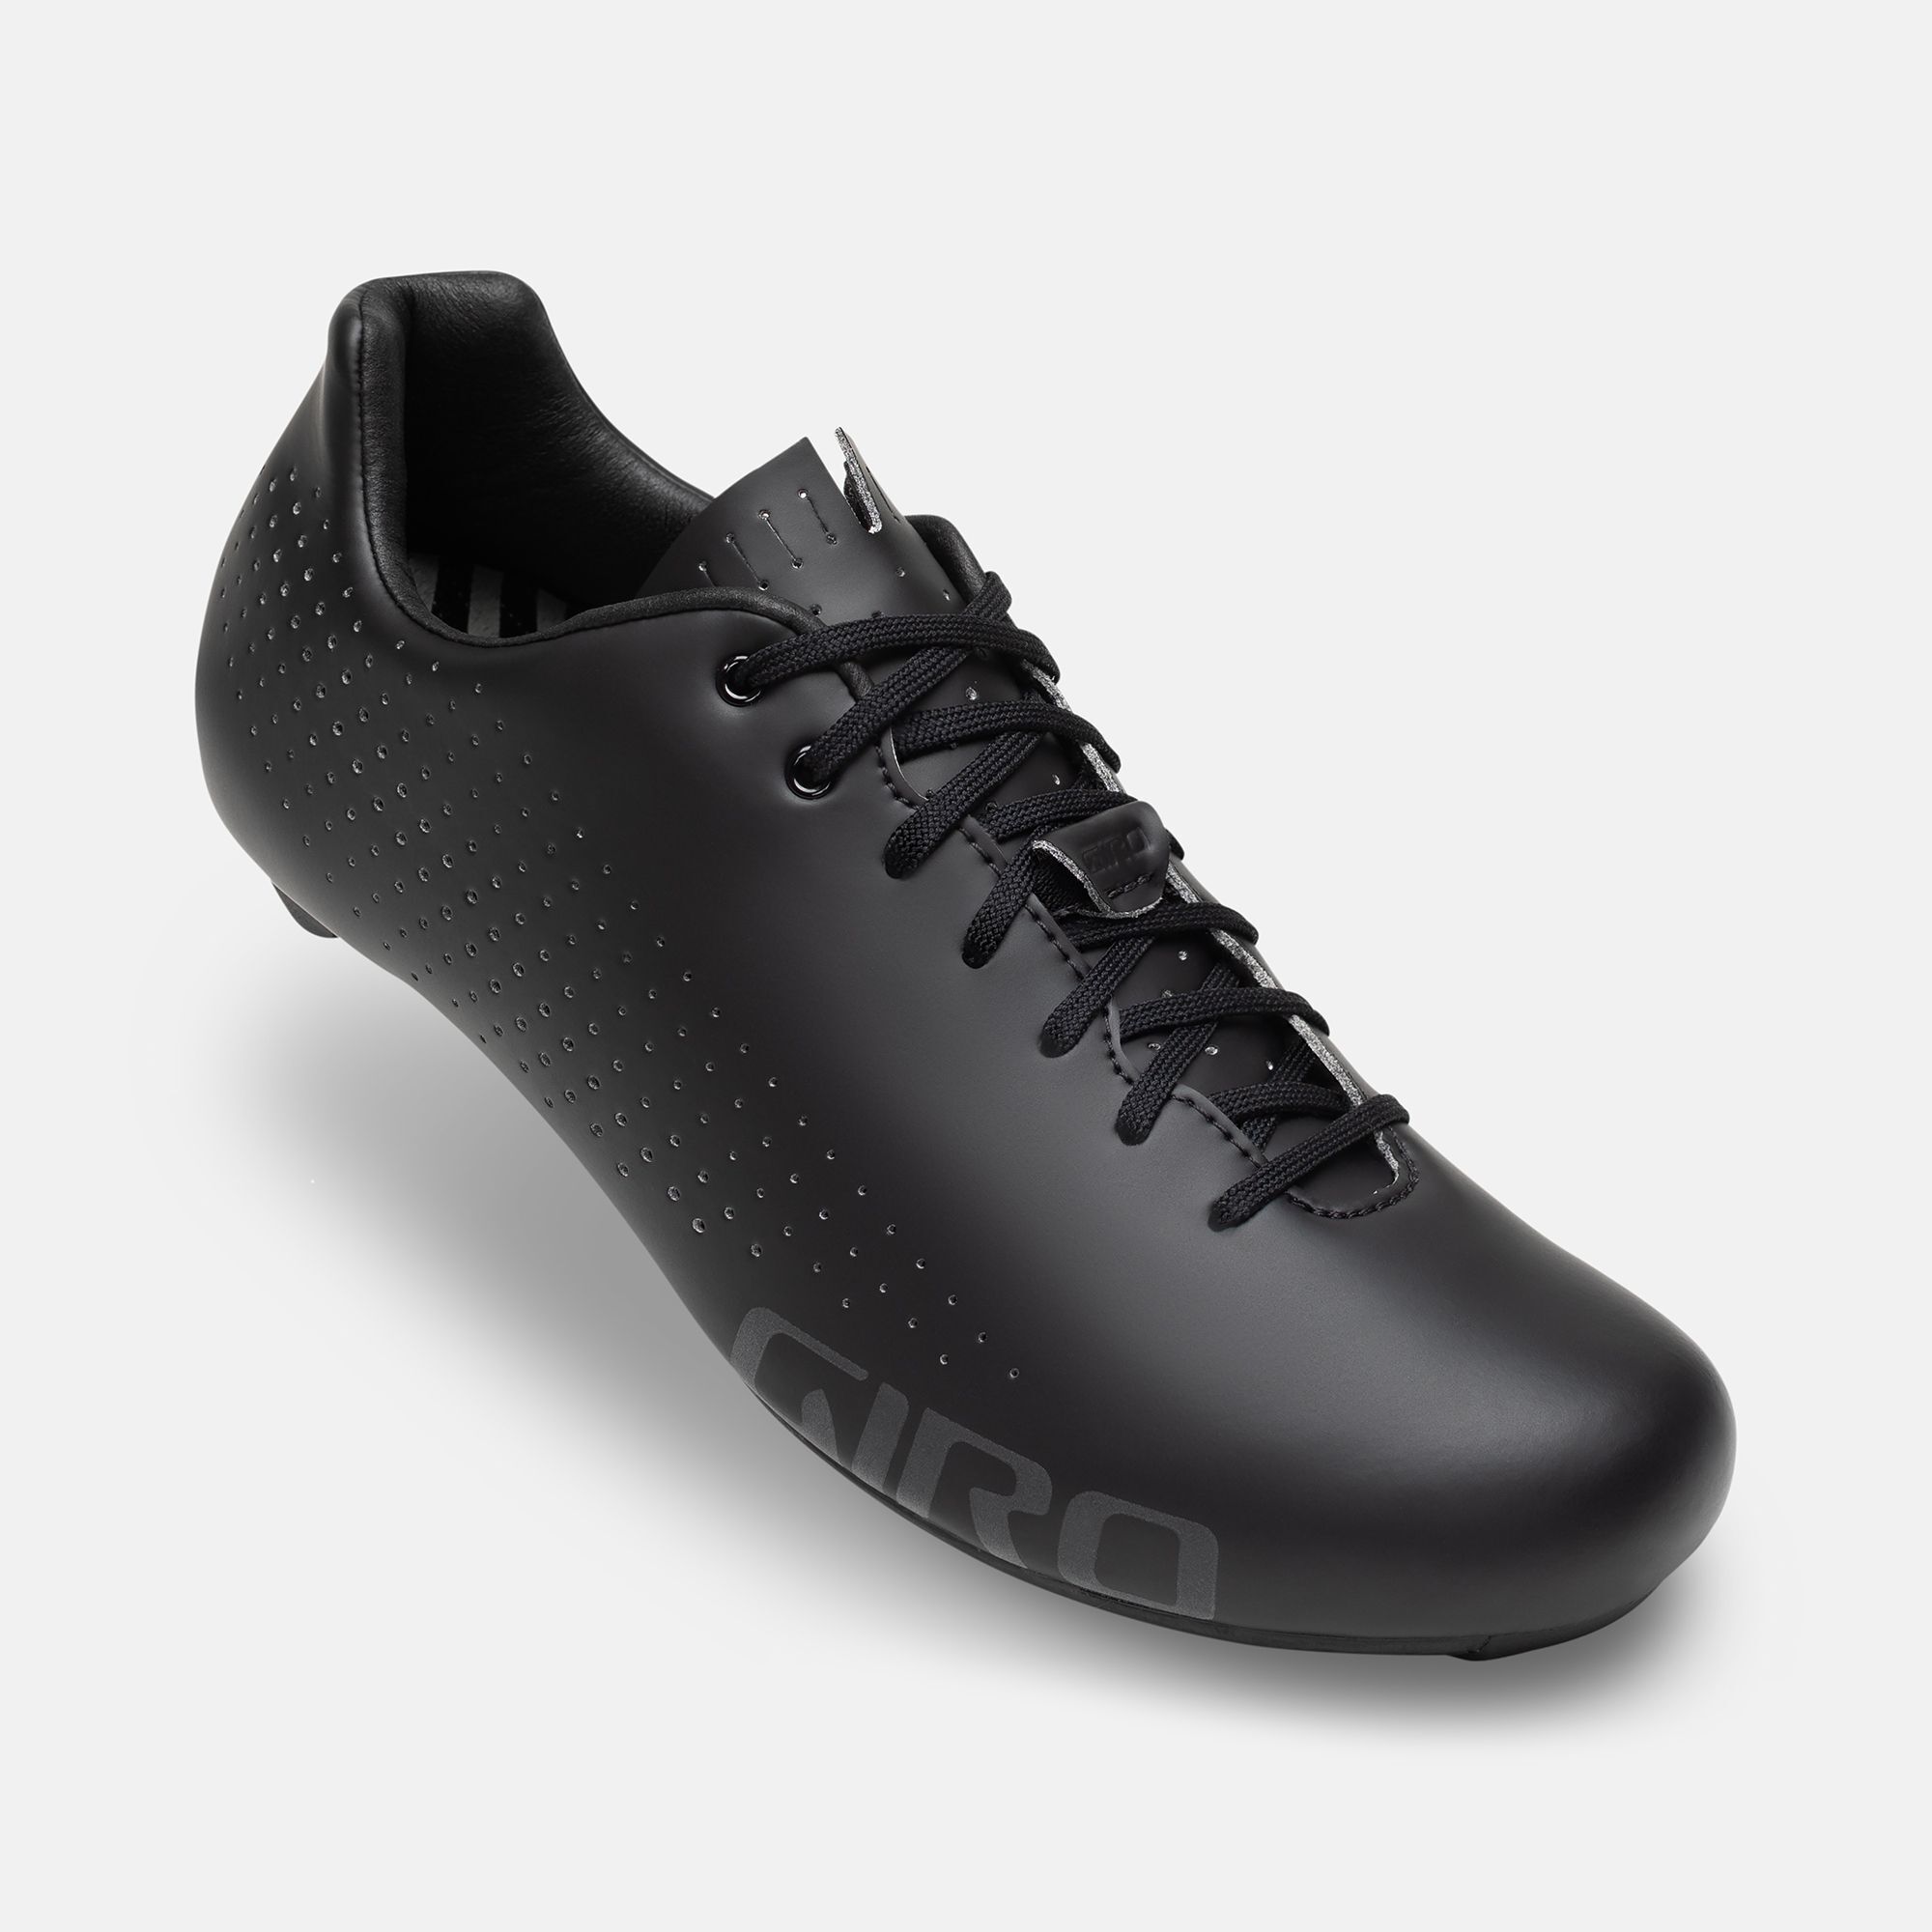 Empire HV Shoe | Giro